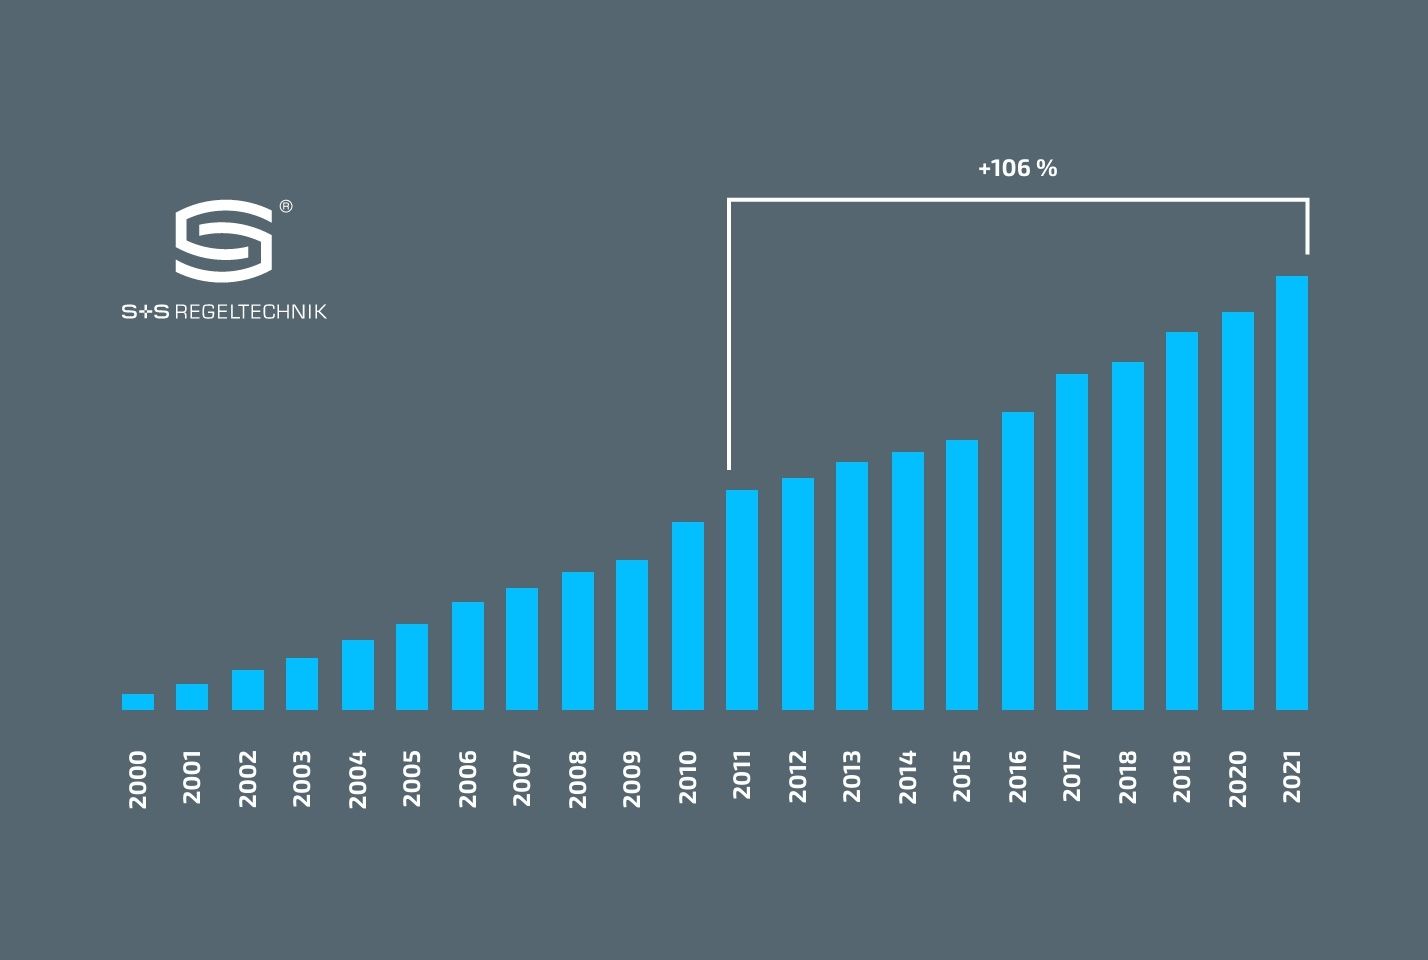 Diagramm mit dem Umsatzwachstum von S+S von Gründungsjahr 2000 bis 2021